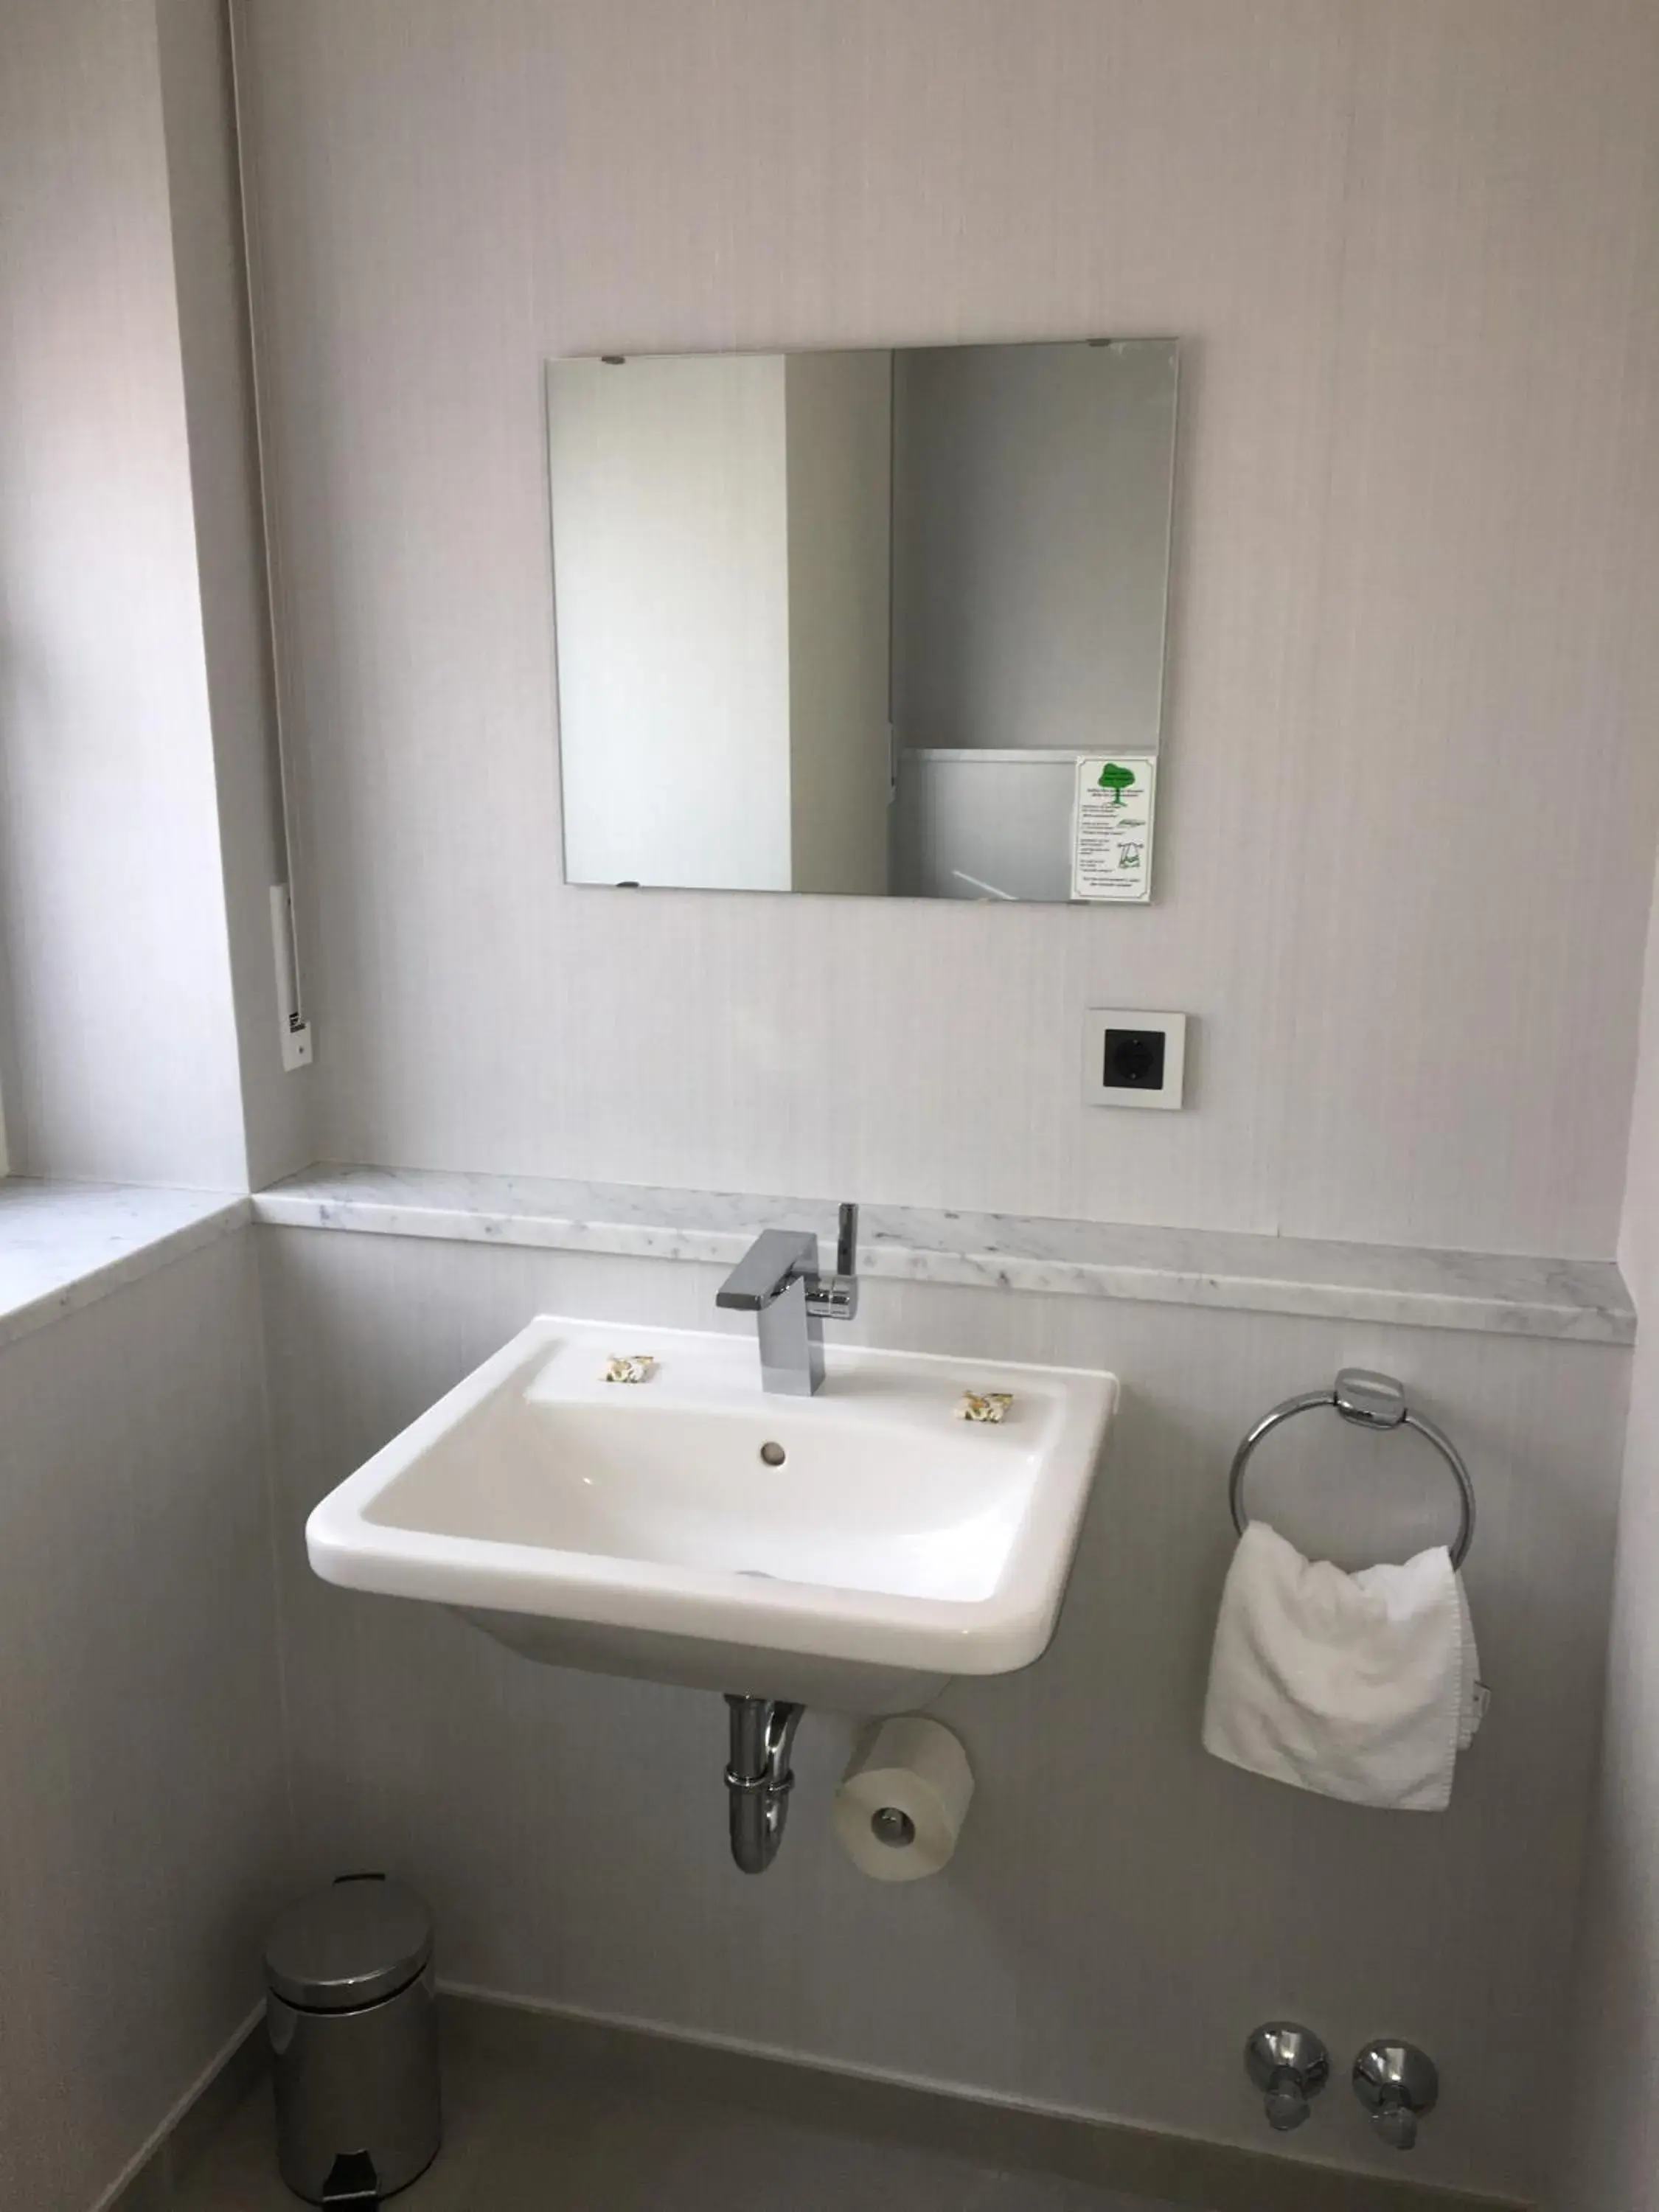 Toilet, Bathroom in Durer-Hotel